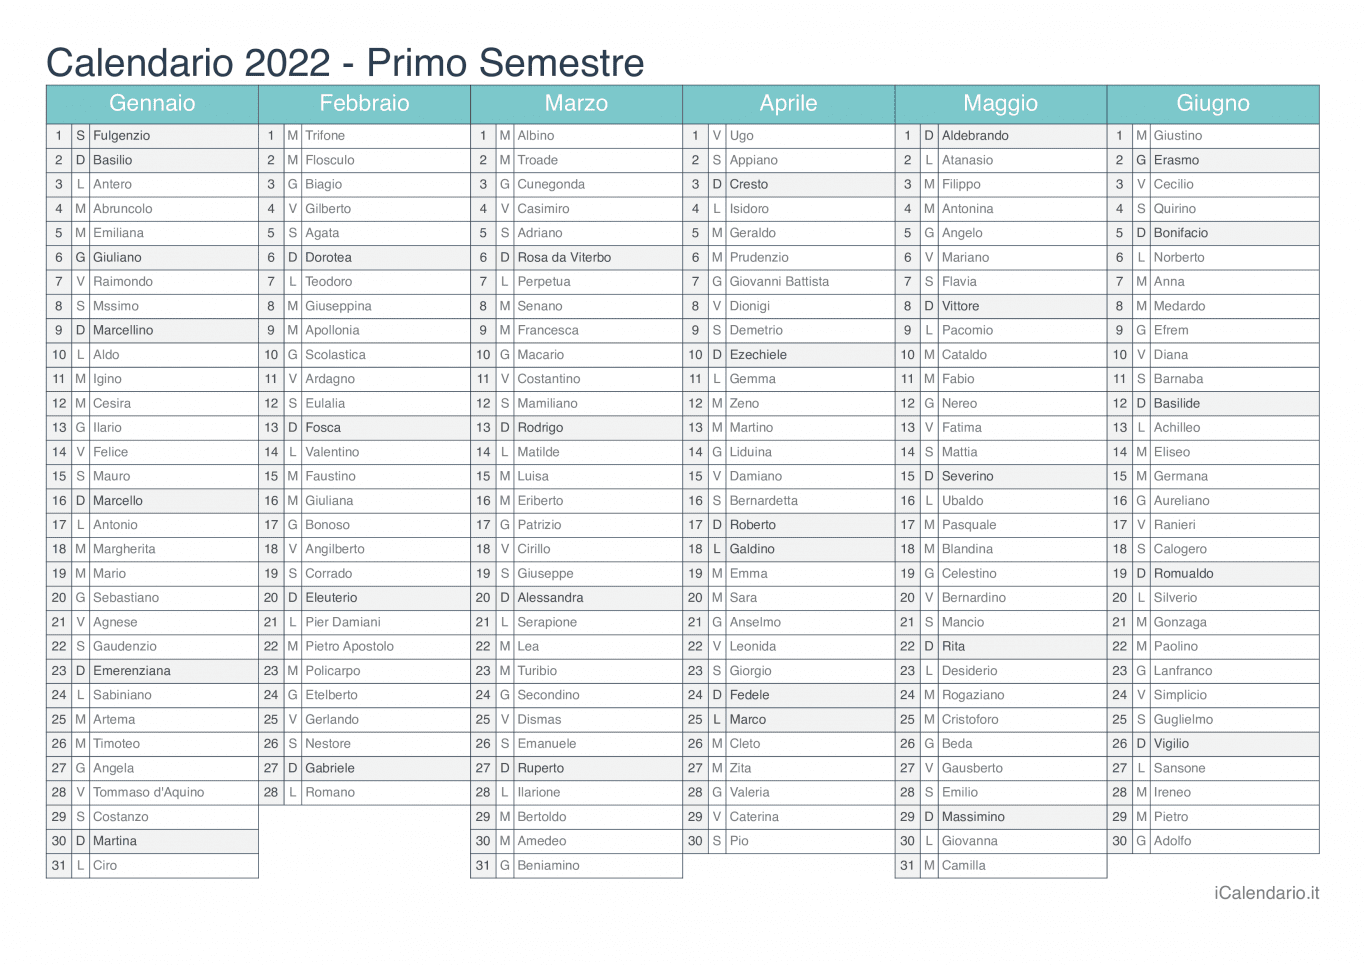 Calendario semestrale 2022 con santi e festivi - Turchese